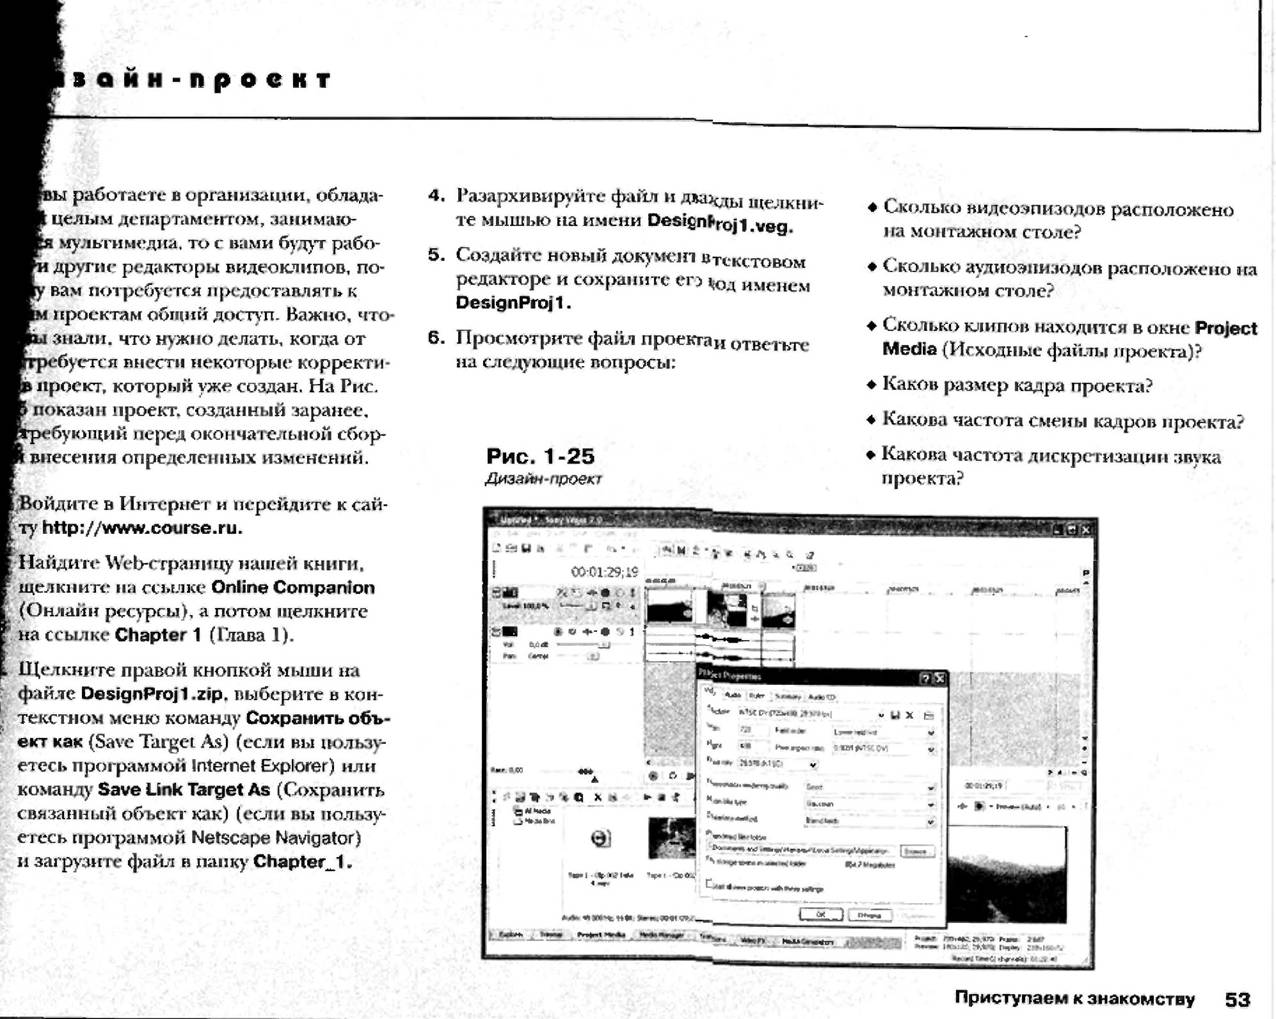 http://redaktori-uroki.3dn.ru/_ph/12/138401001.jpg